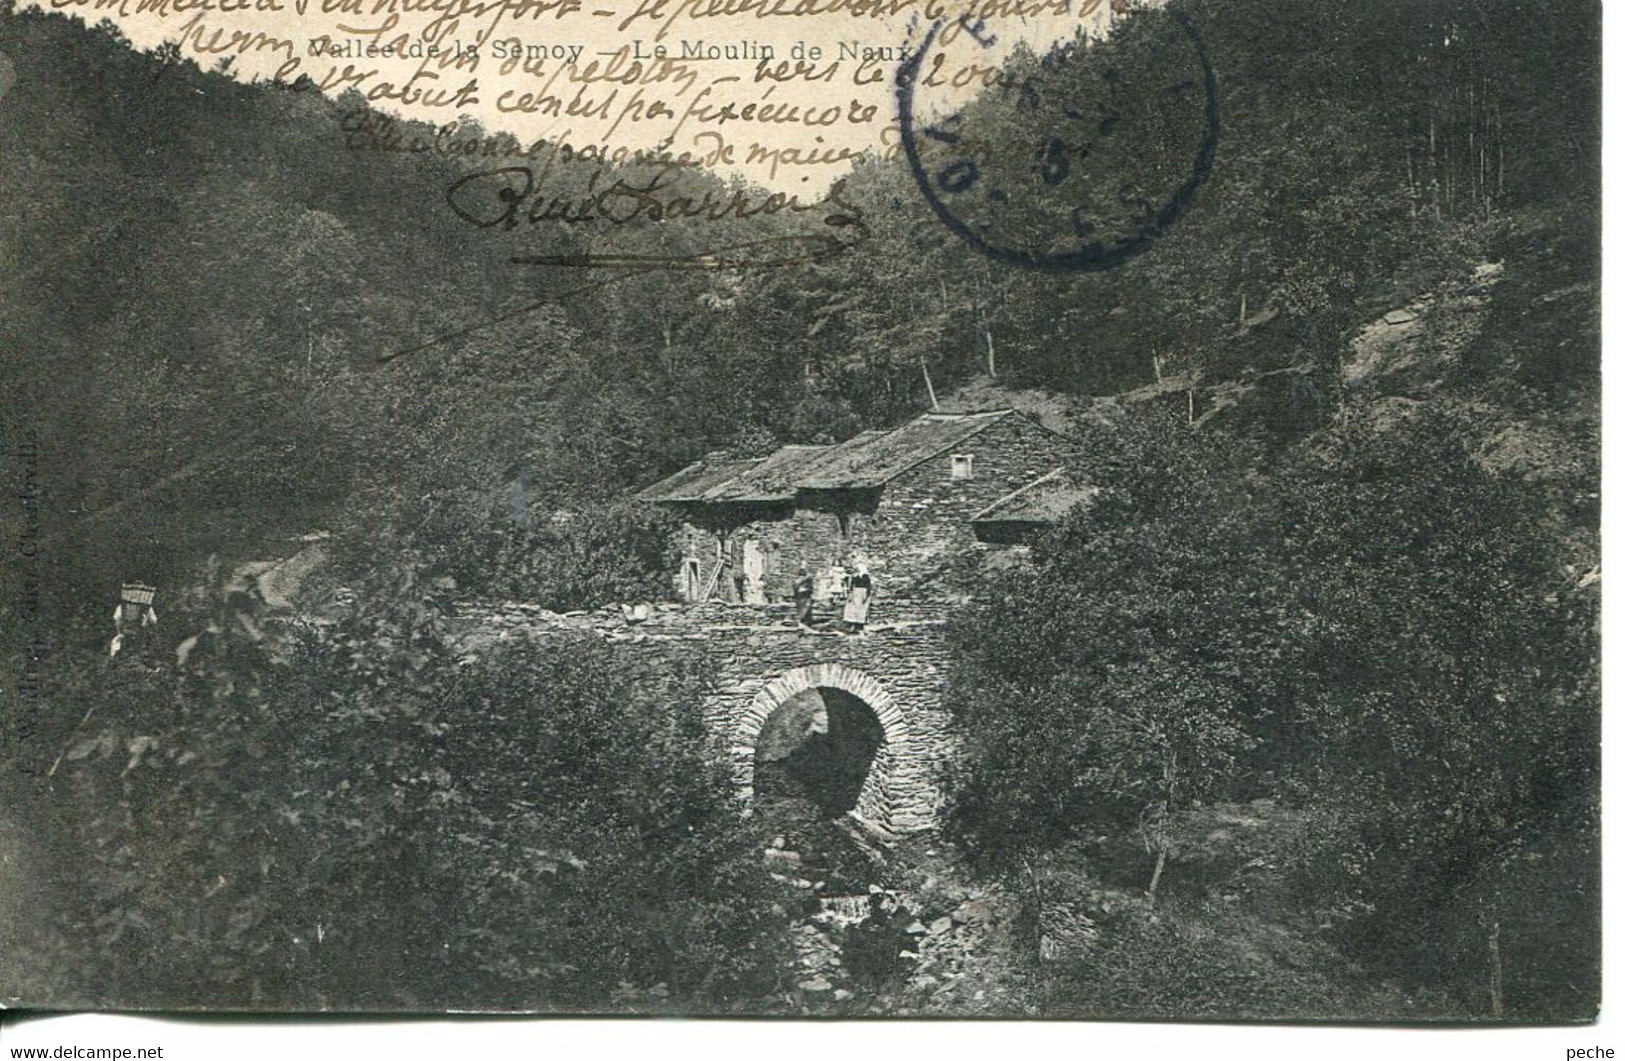 N°4599 R -cpa Vallée De La Samoy -le Moulin De Naux- - Moulins à Eau